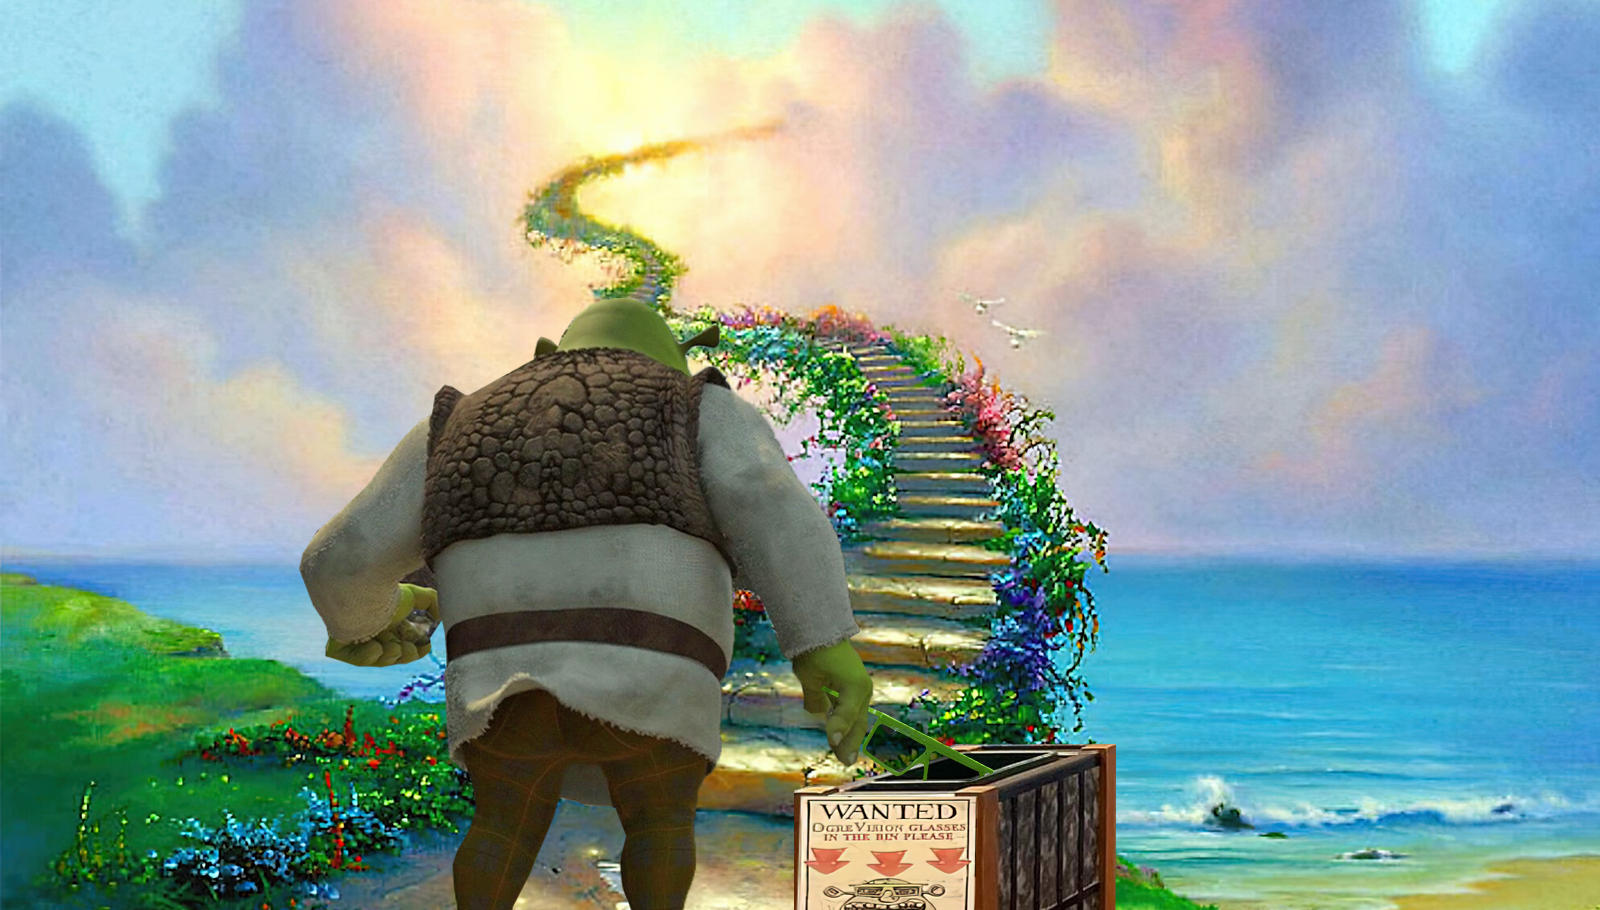 A final farewell to Universal Studios Florida's Shrek 4-D